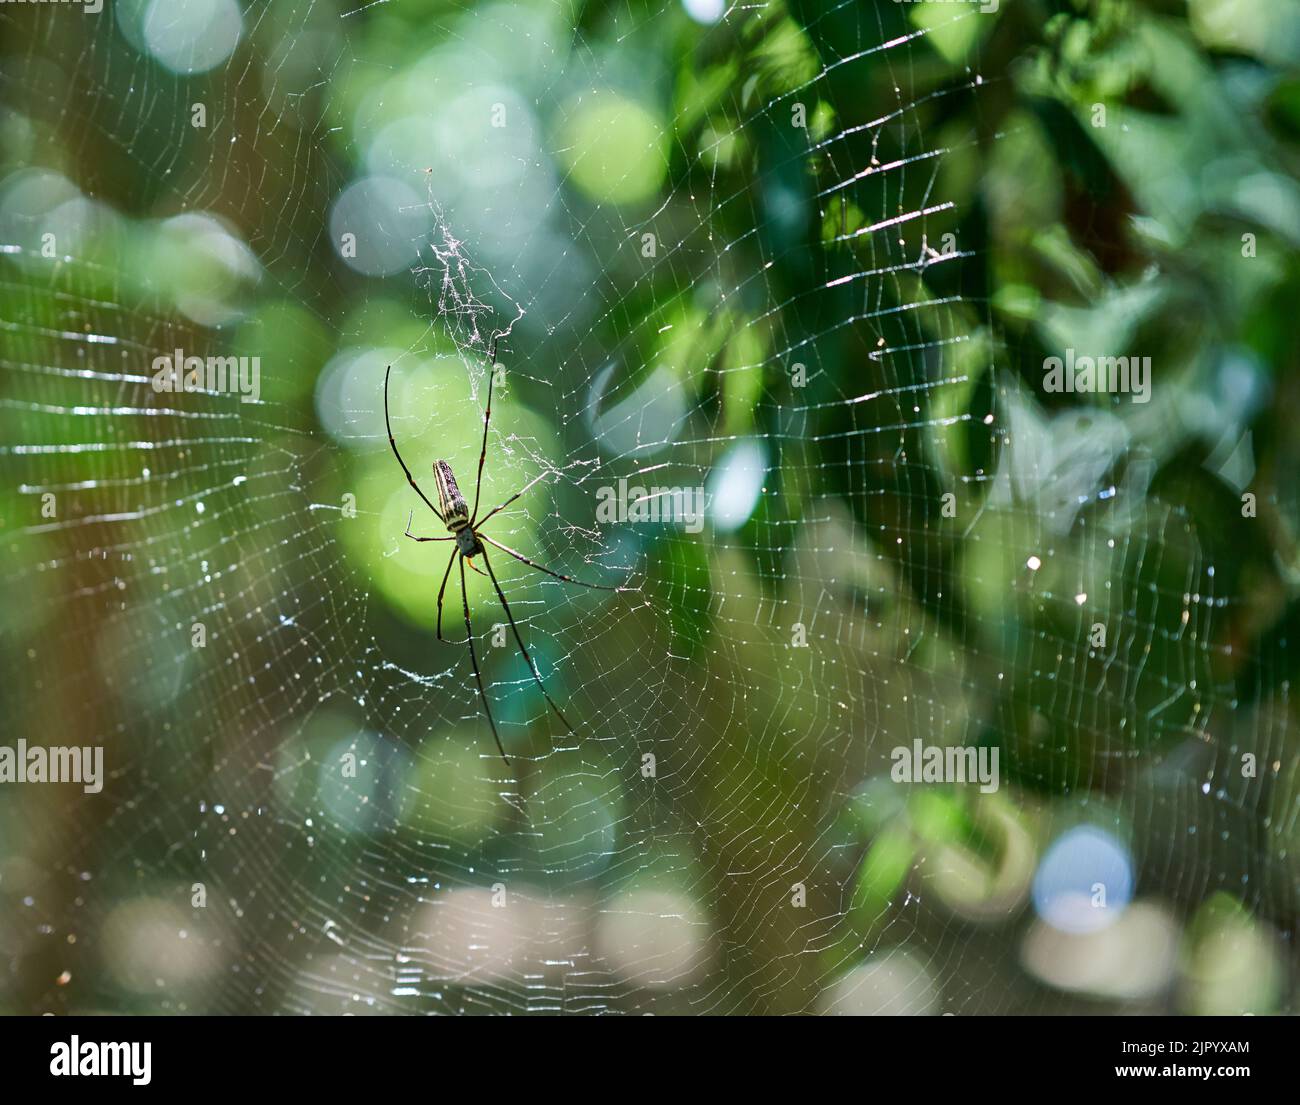 Una araña grande en una red en un bosque verde, a la luz del sol de la tarde. Foto de stock